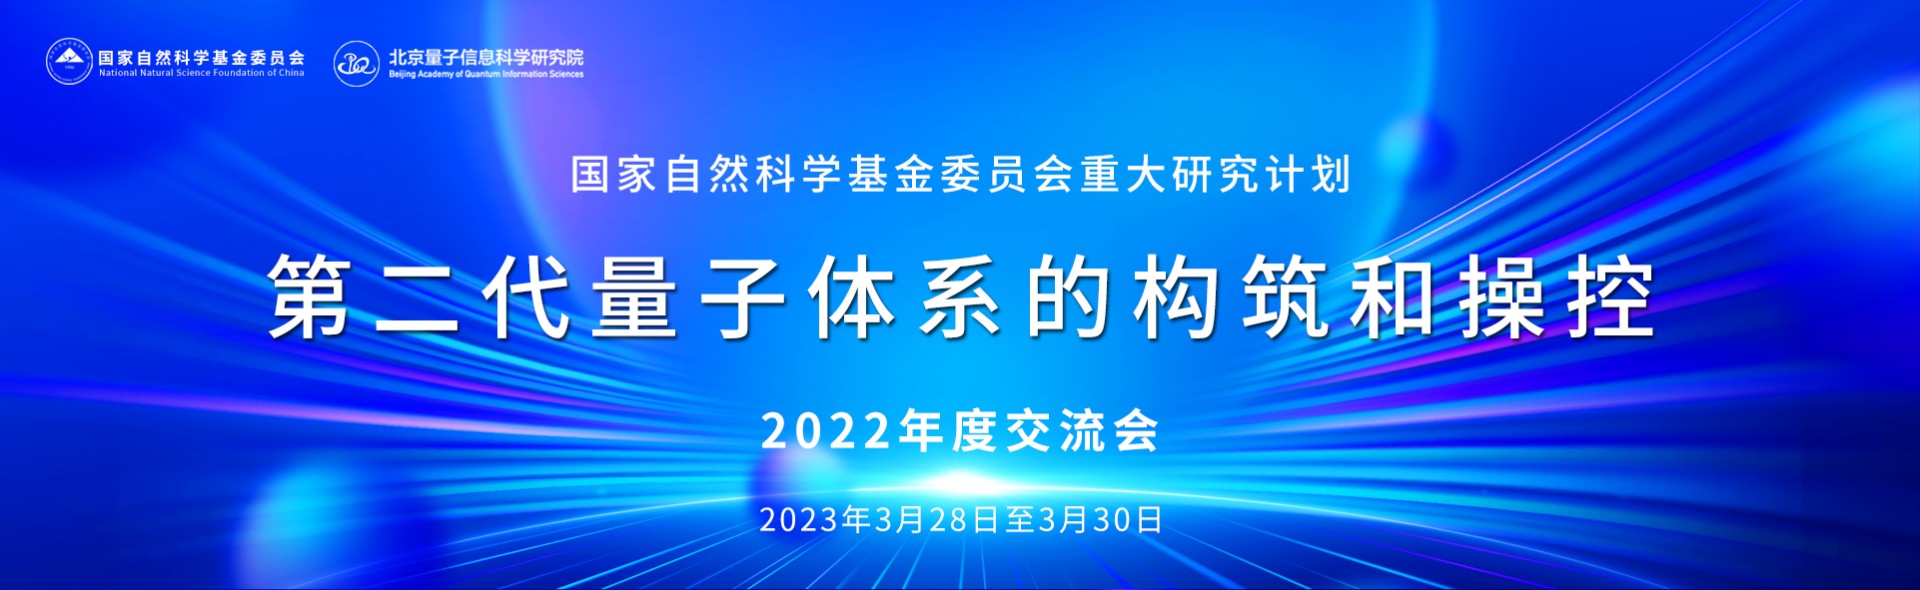 国家自然科学基金委员会重大研究计划“第二代量子体系的构筑和操控”2022年度交流会在北京召开